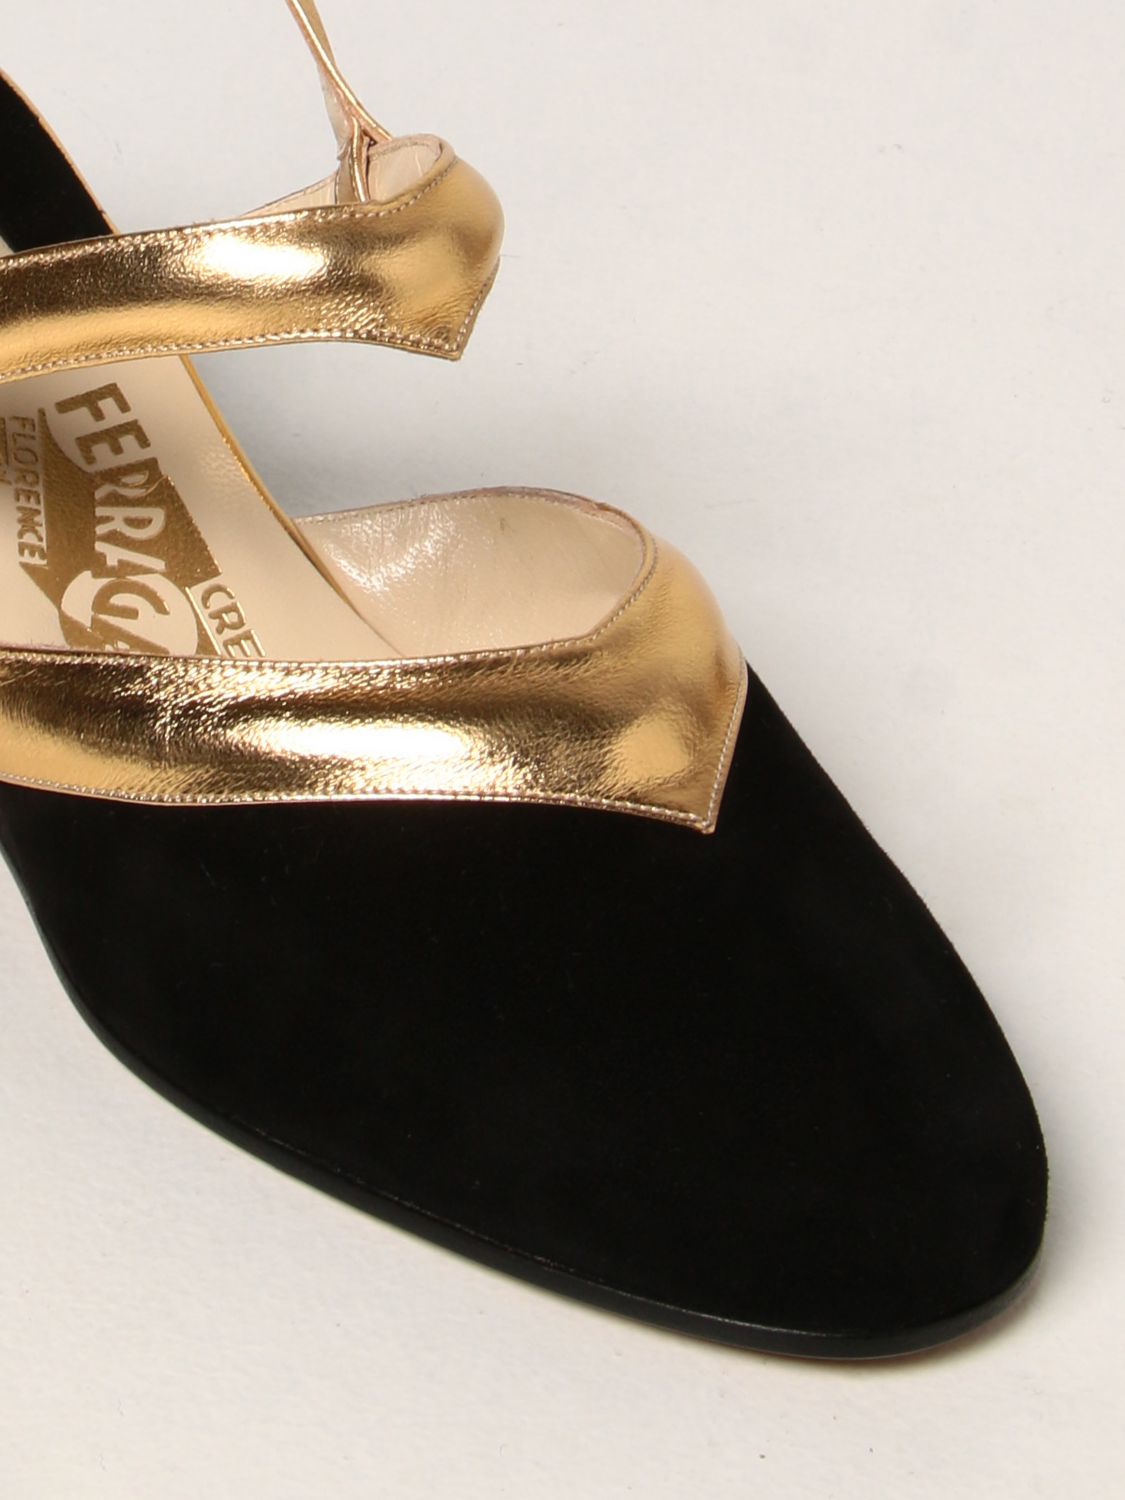 坡跟鞋 Salvatore Ferragamo: 专利 1939 “Ferragamo's Creation” Salvatore Ferragamo 凉鞋 黑色 4